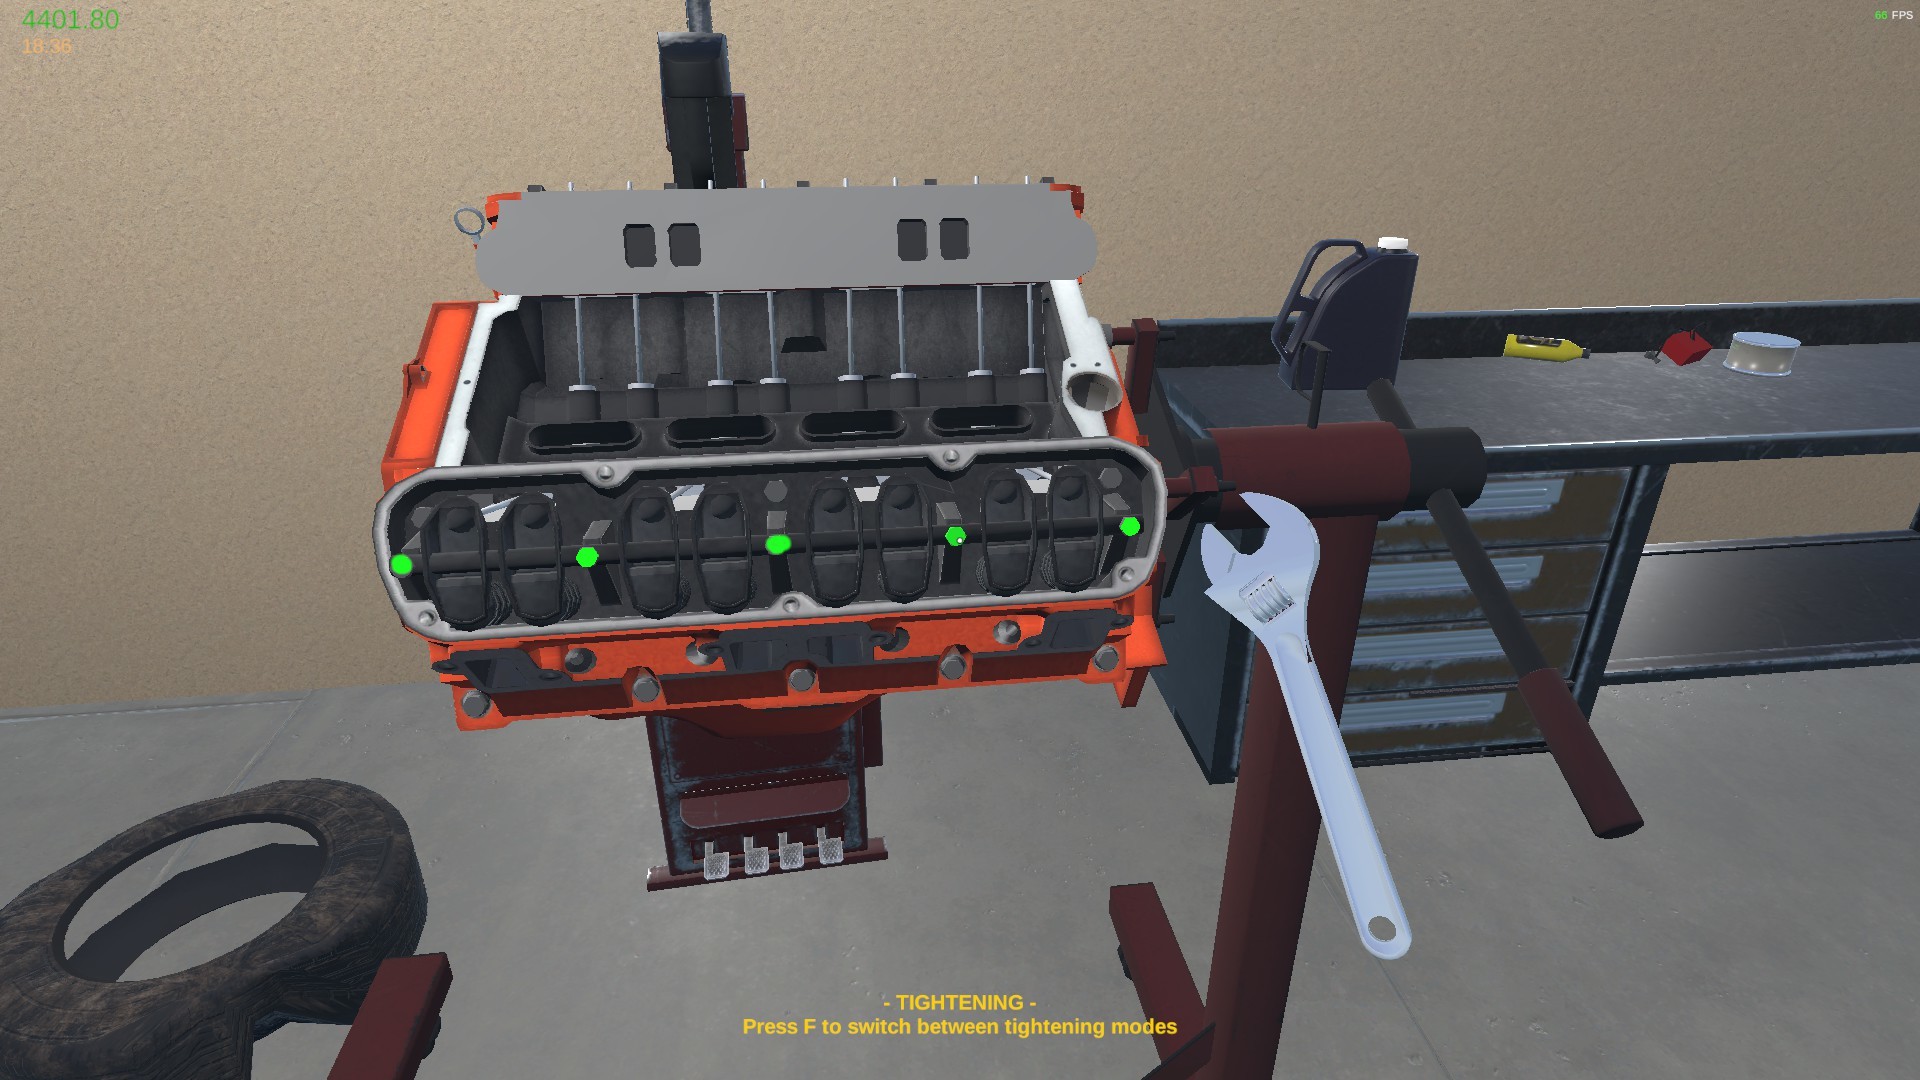 My Garage How to build a V8 engine guide - 2. Engine Block - E9211CE